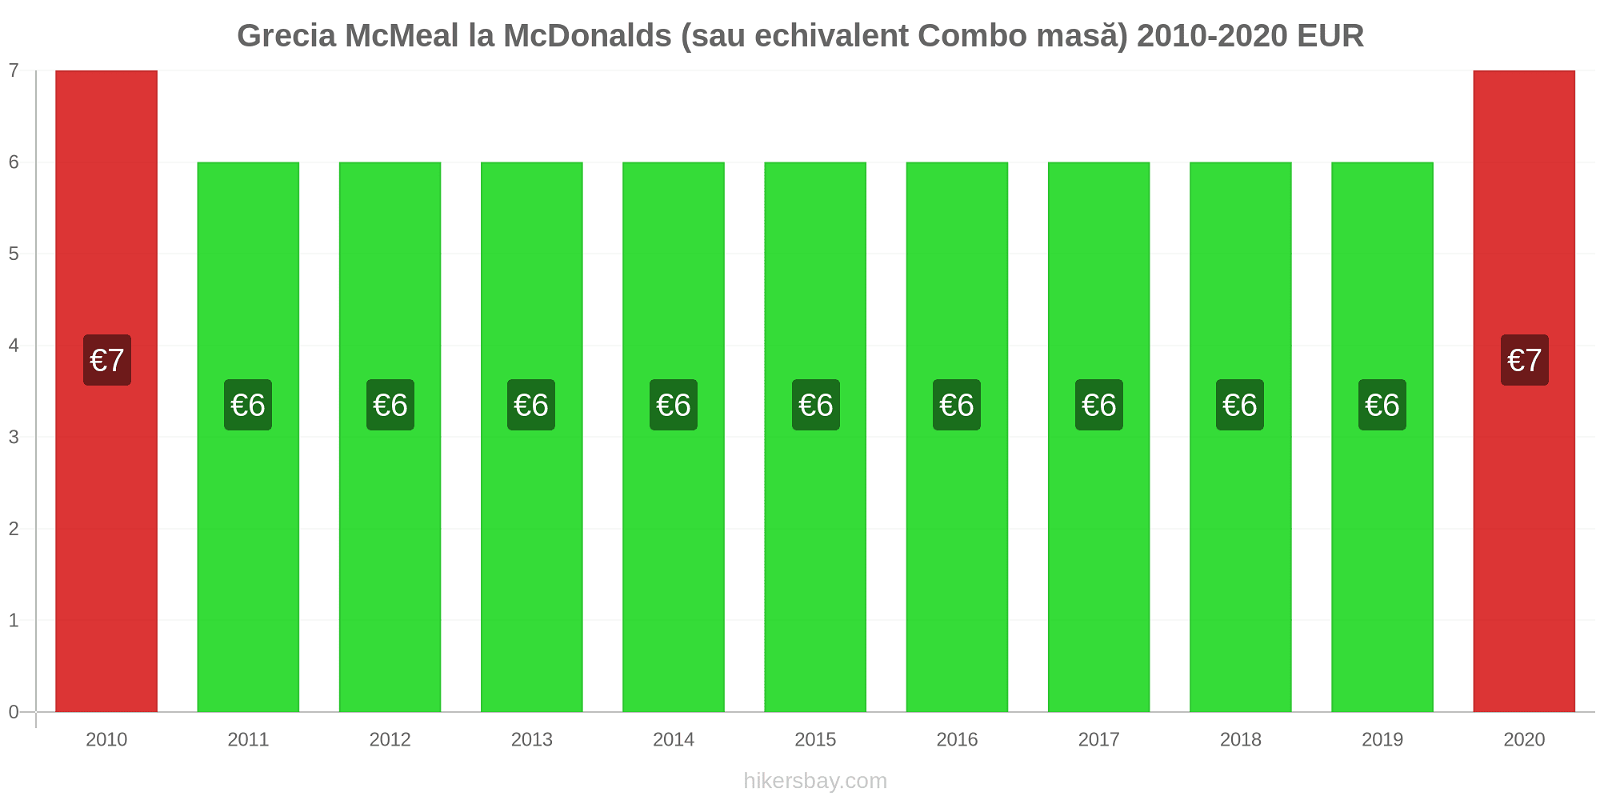 Grecia modificări de preț McMeal la McDonalds (sau echivalent Combo masă) hikersbay.com